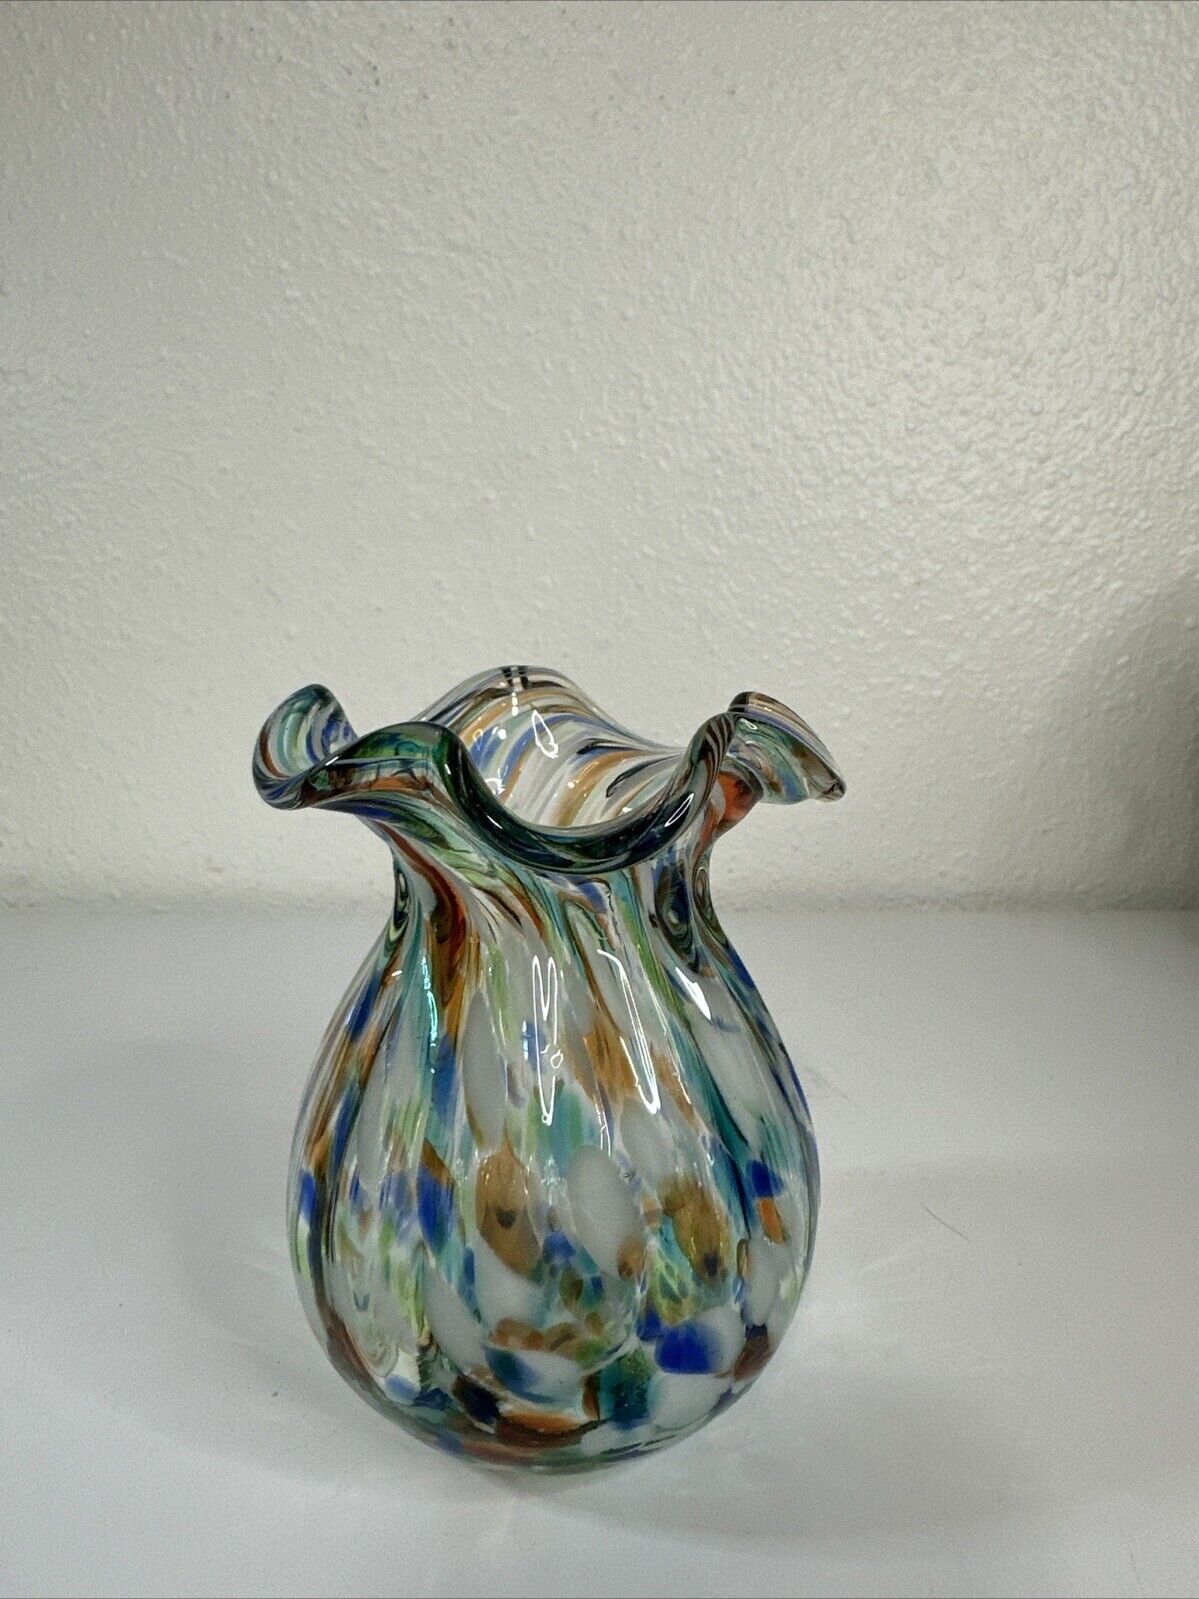 Murano Italy Confetti Ribbed Ruffled Art Glass Hand Blown Vase 5” Tall